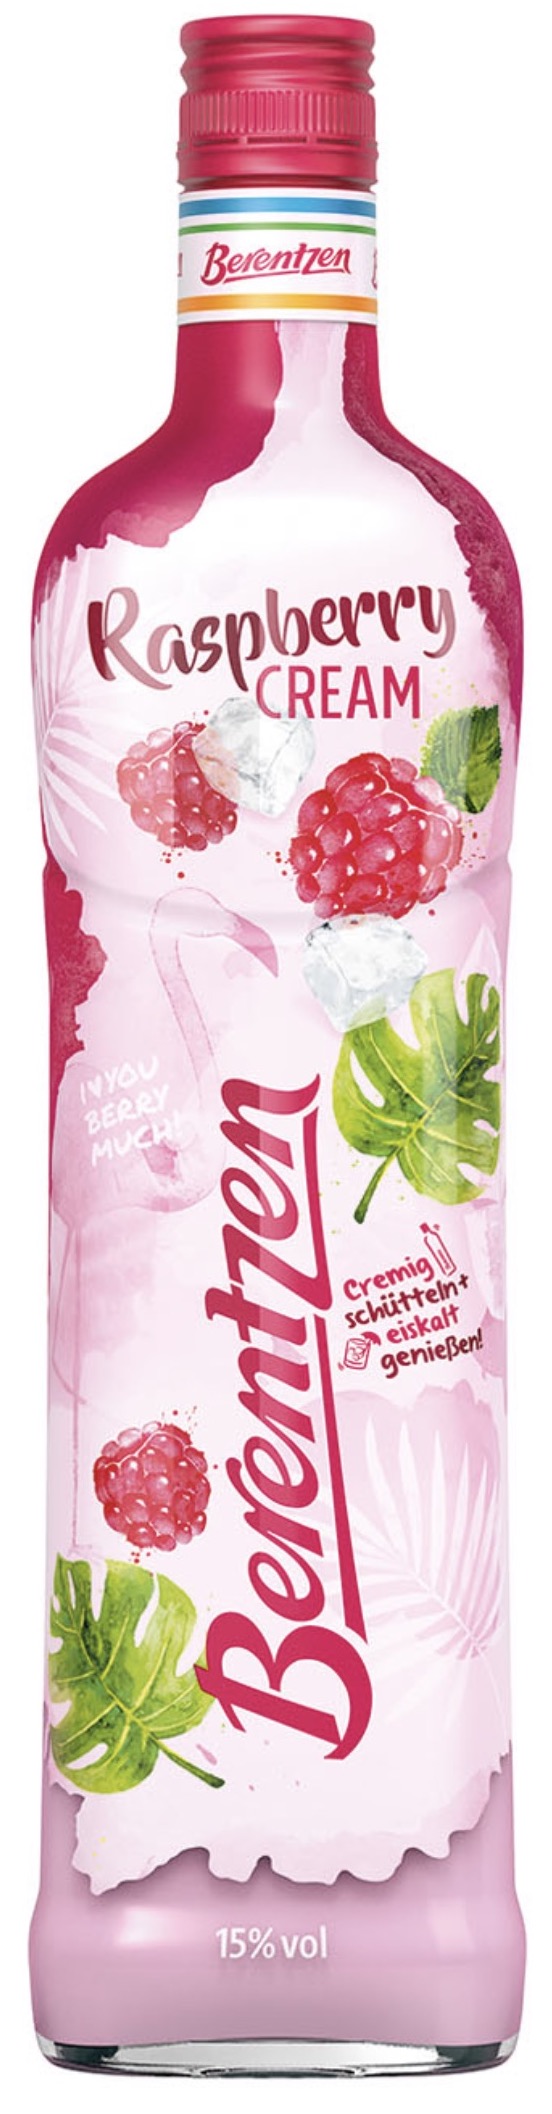 Berentzen Raspberry Cream 15% vol. 0,7L